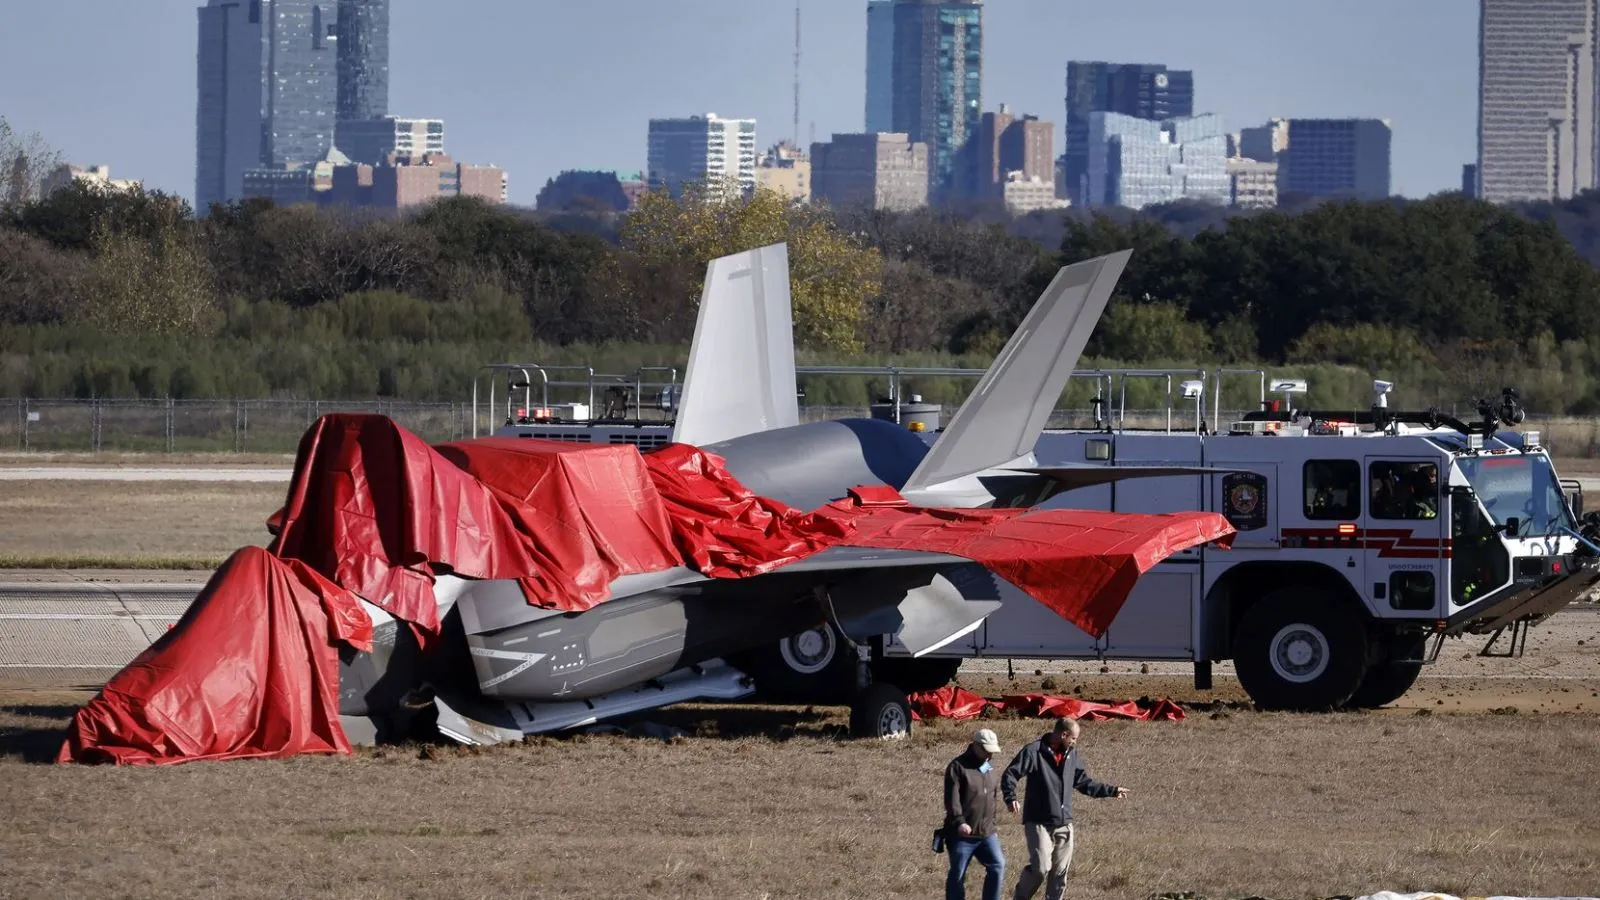 Máy bay chiến đấu F-35 của Mỹ gặp nạn trên đường băng 